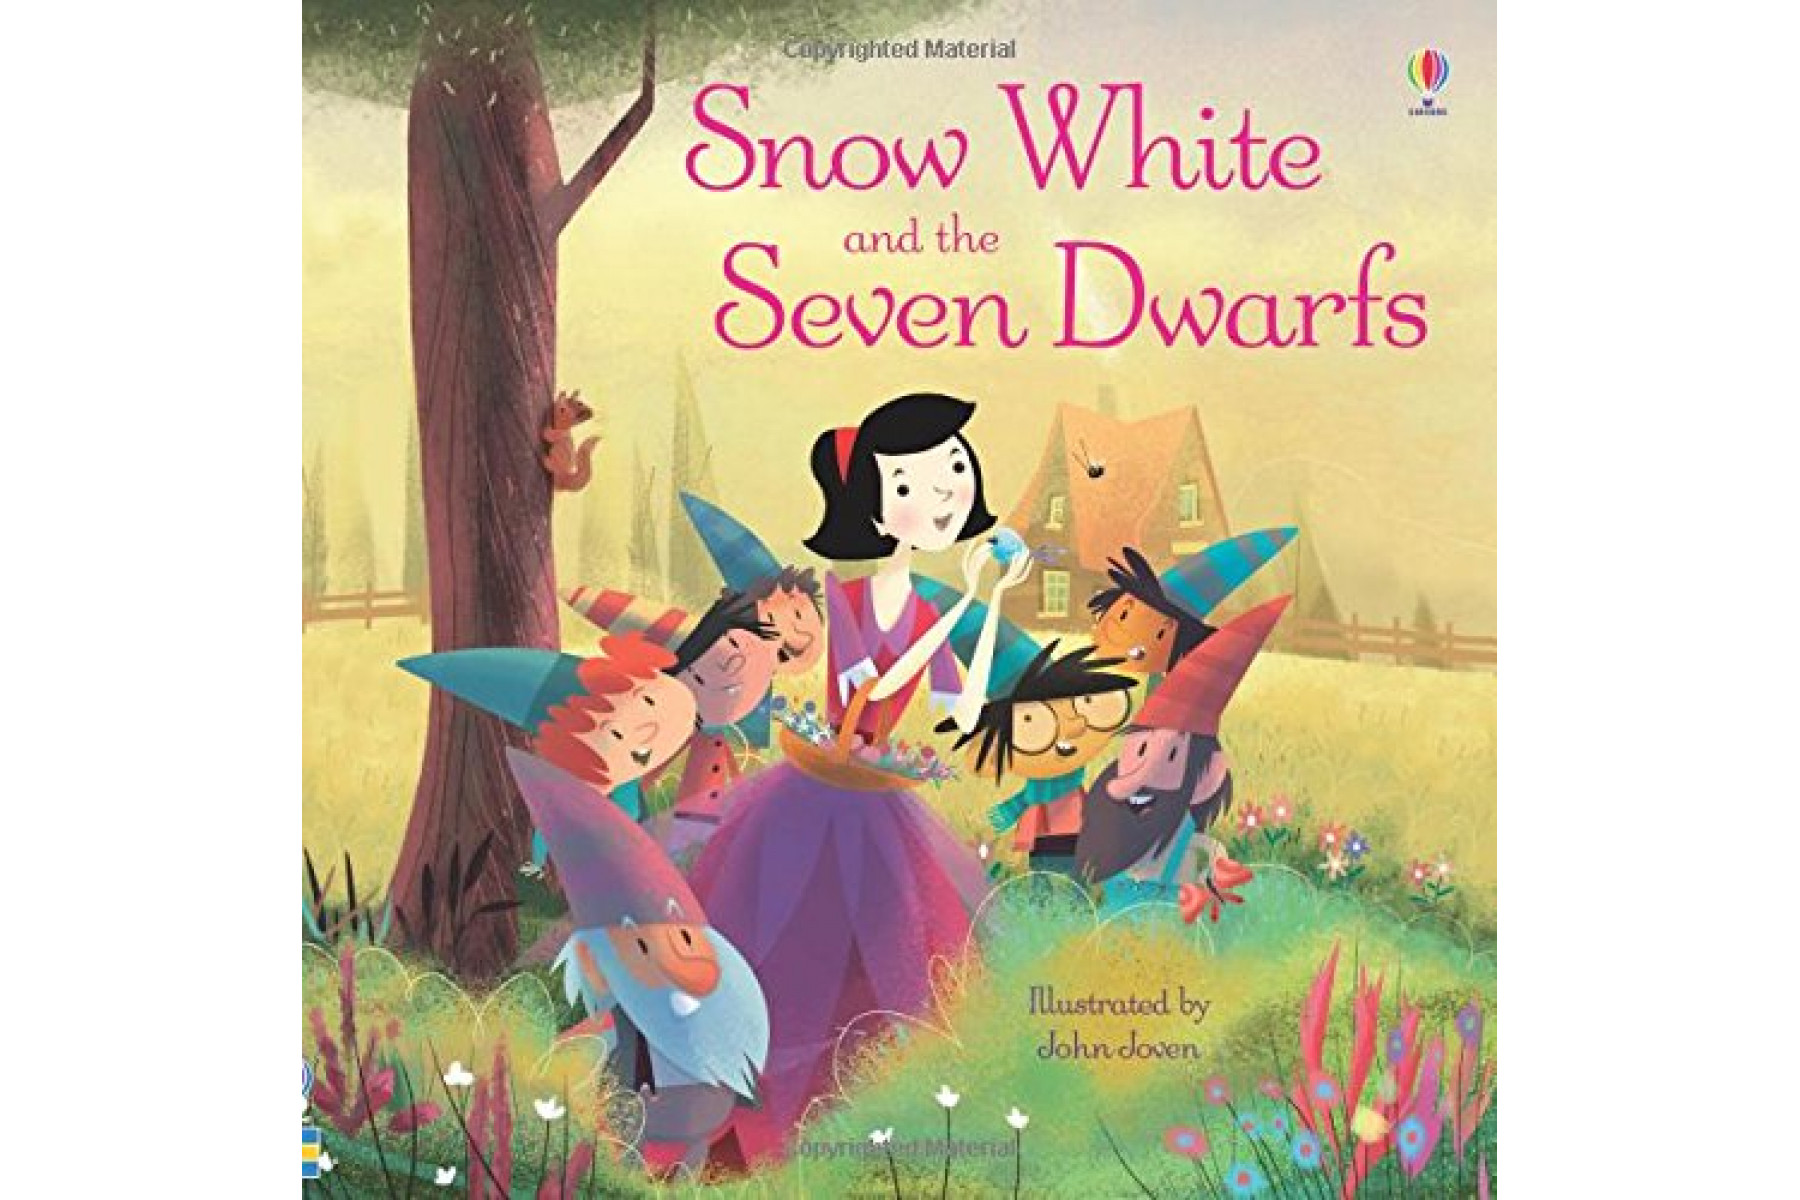 Snow White & the Seven Dwarfs (Picture Books)